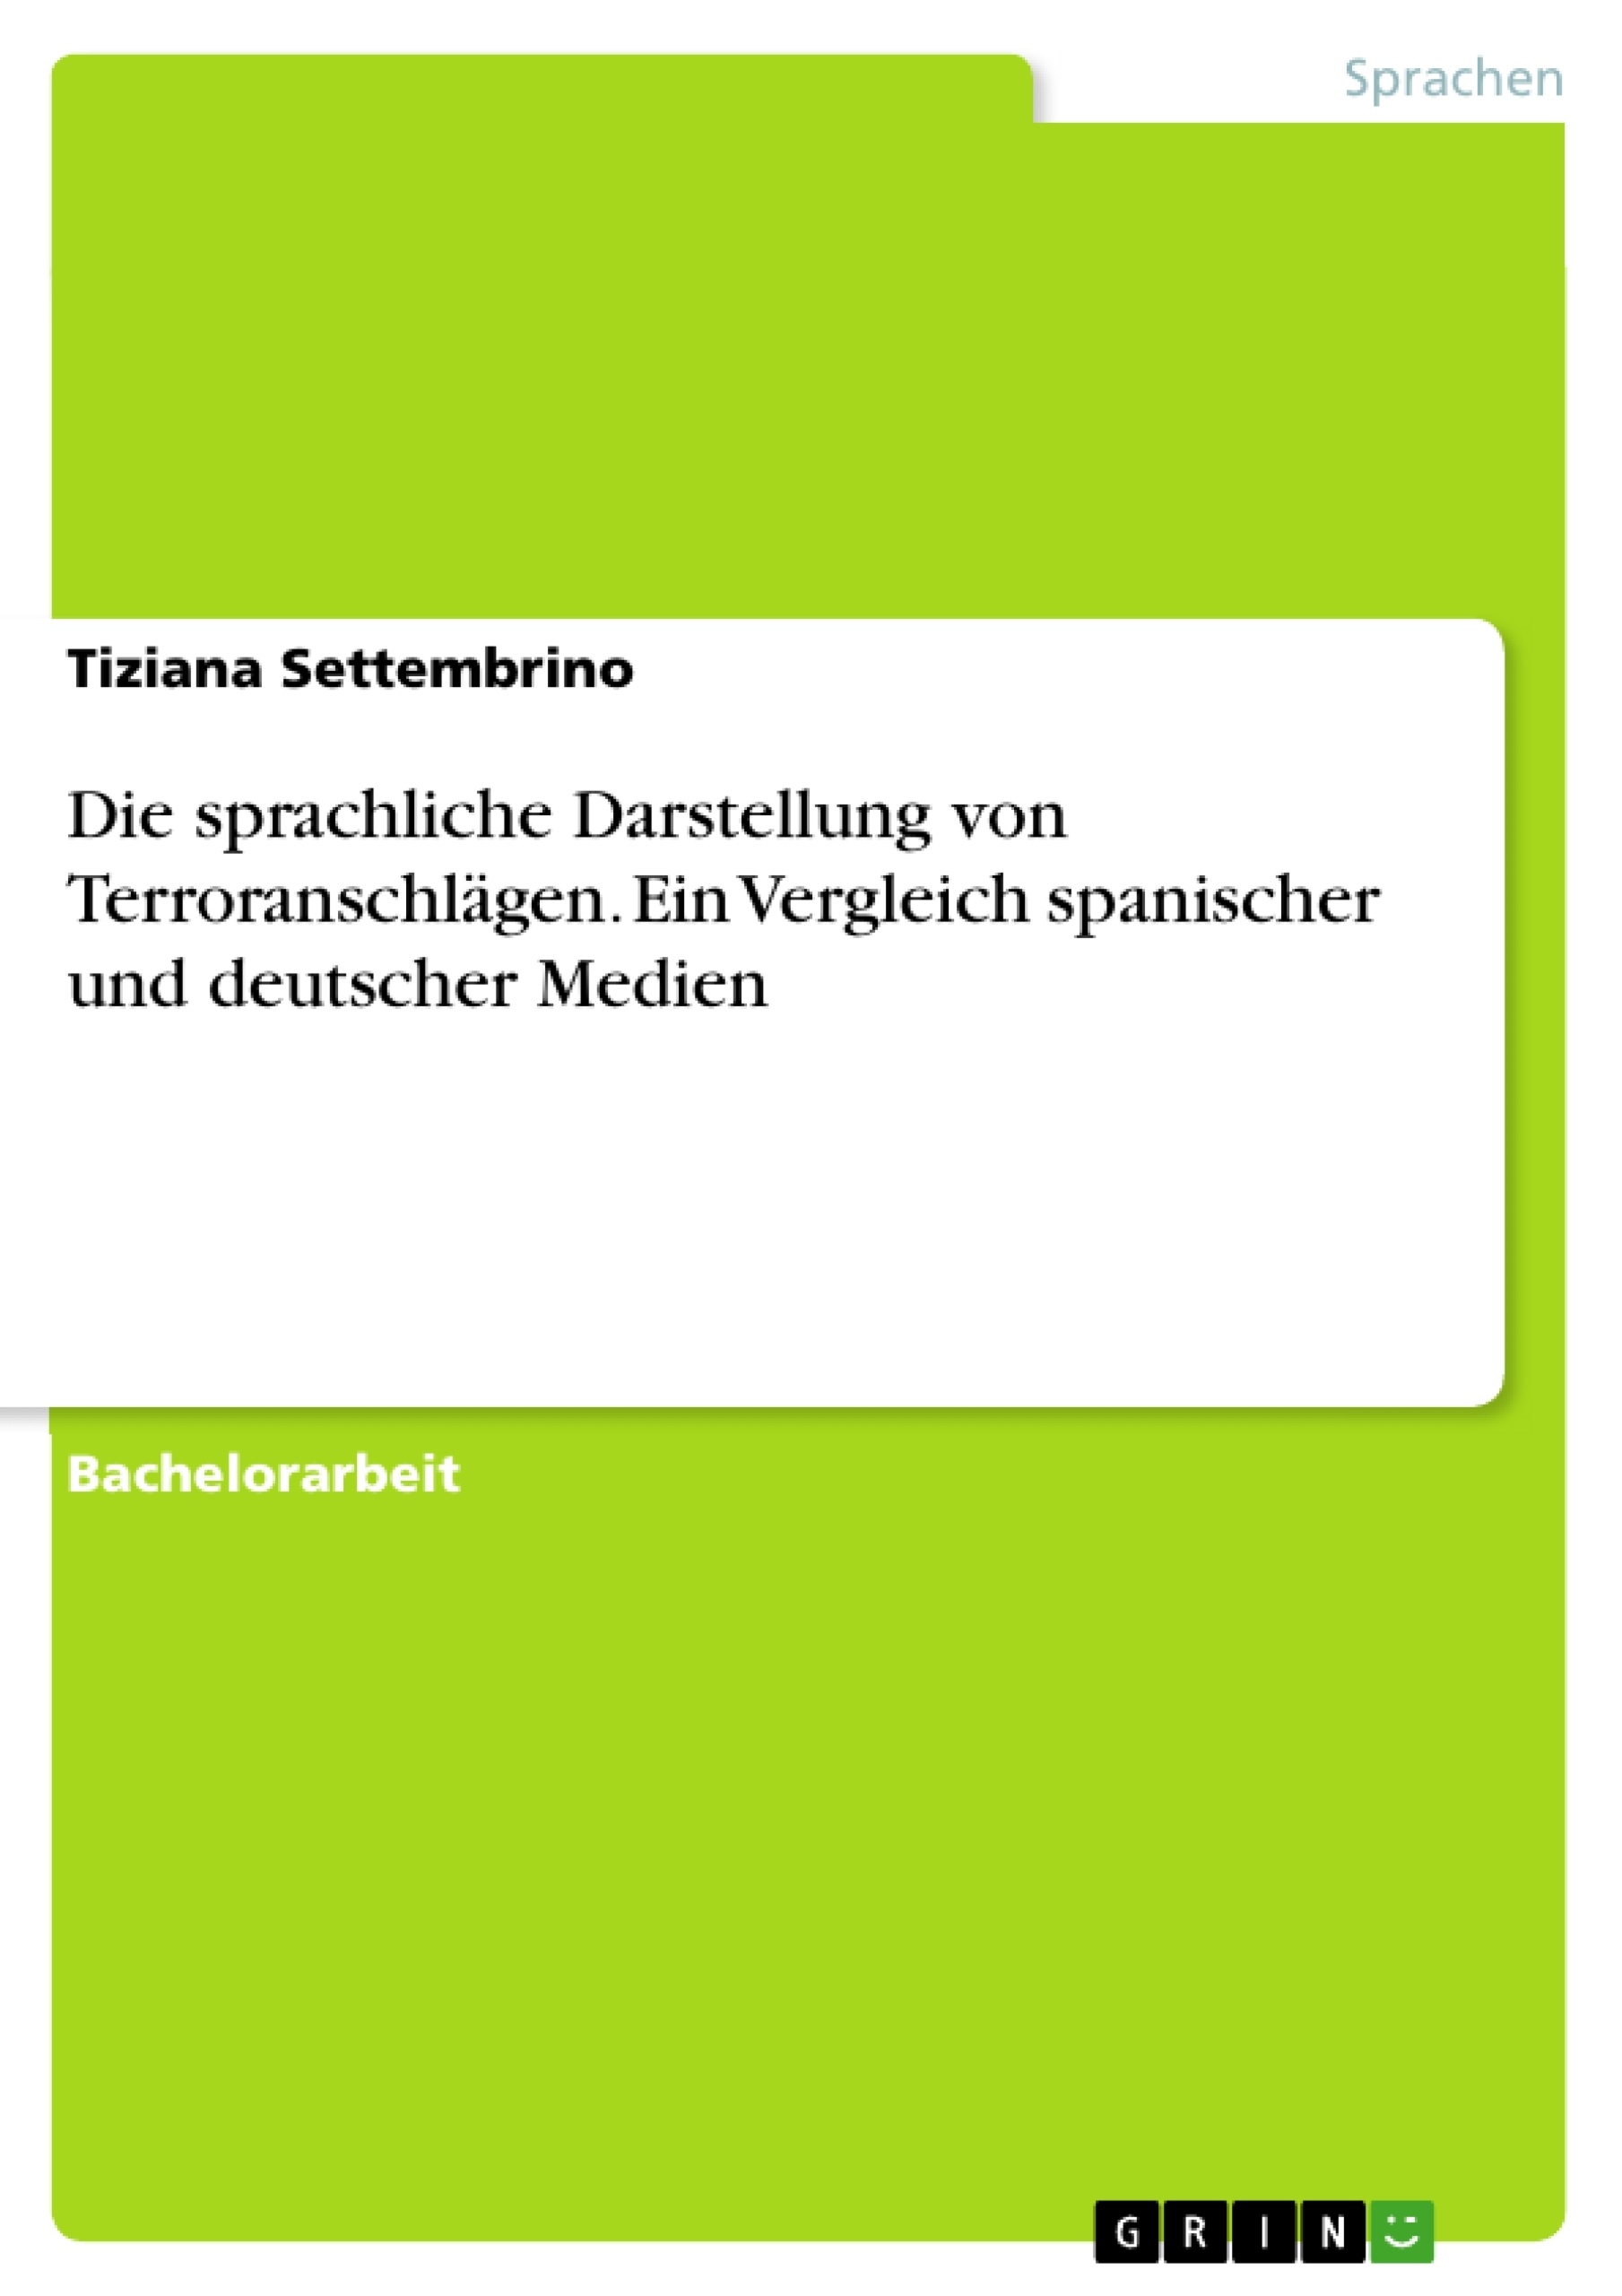 Título: Die sprachliche Darstellung von Terroranschlägen. Ein Vergleich spanischer und deutscher Medien